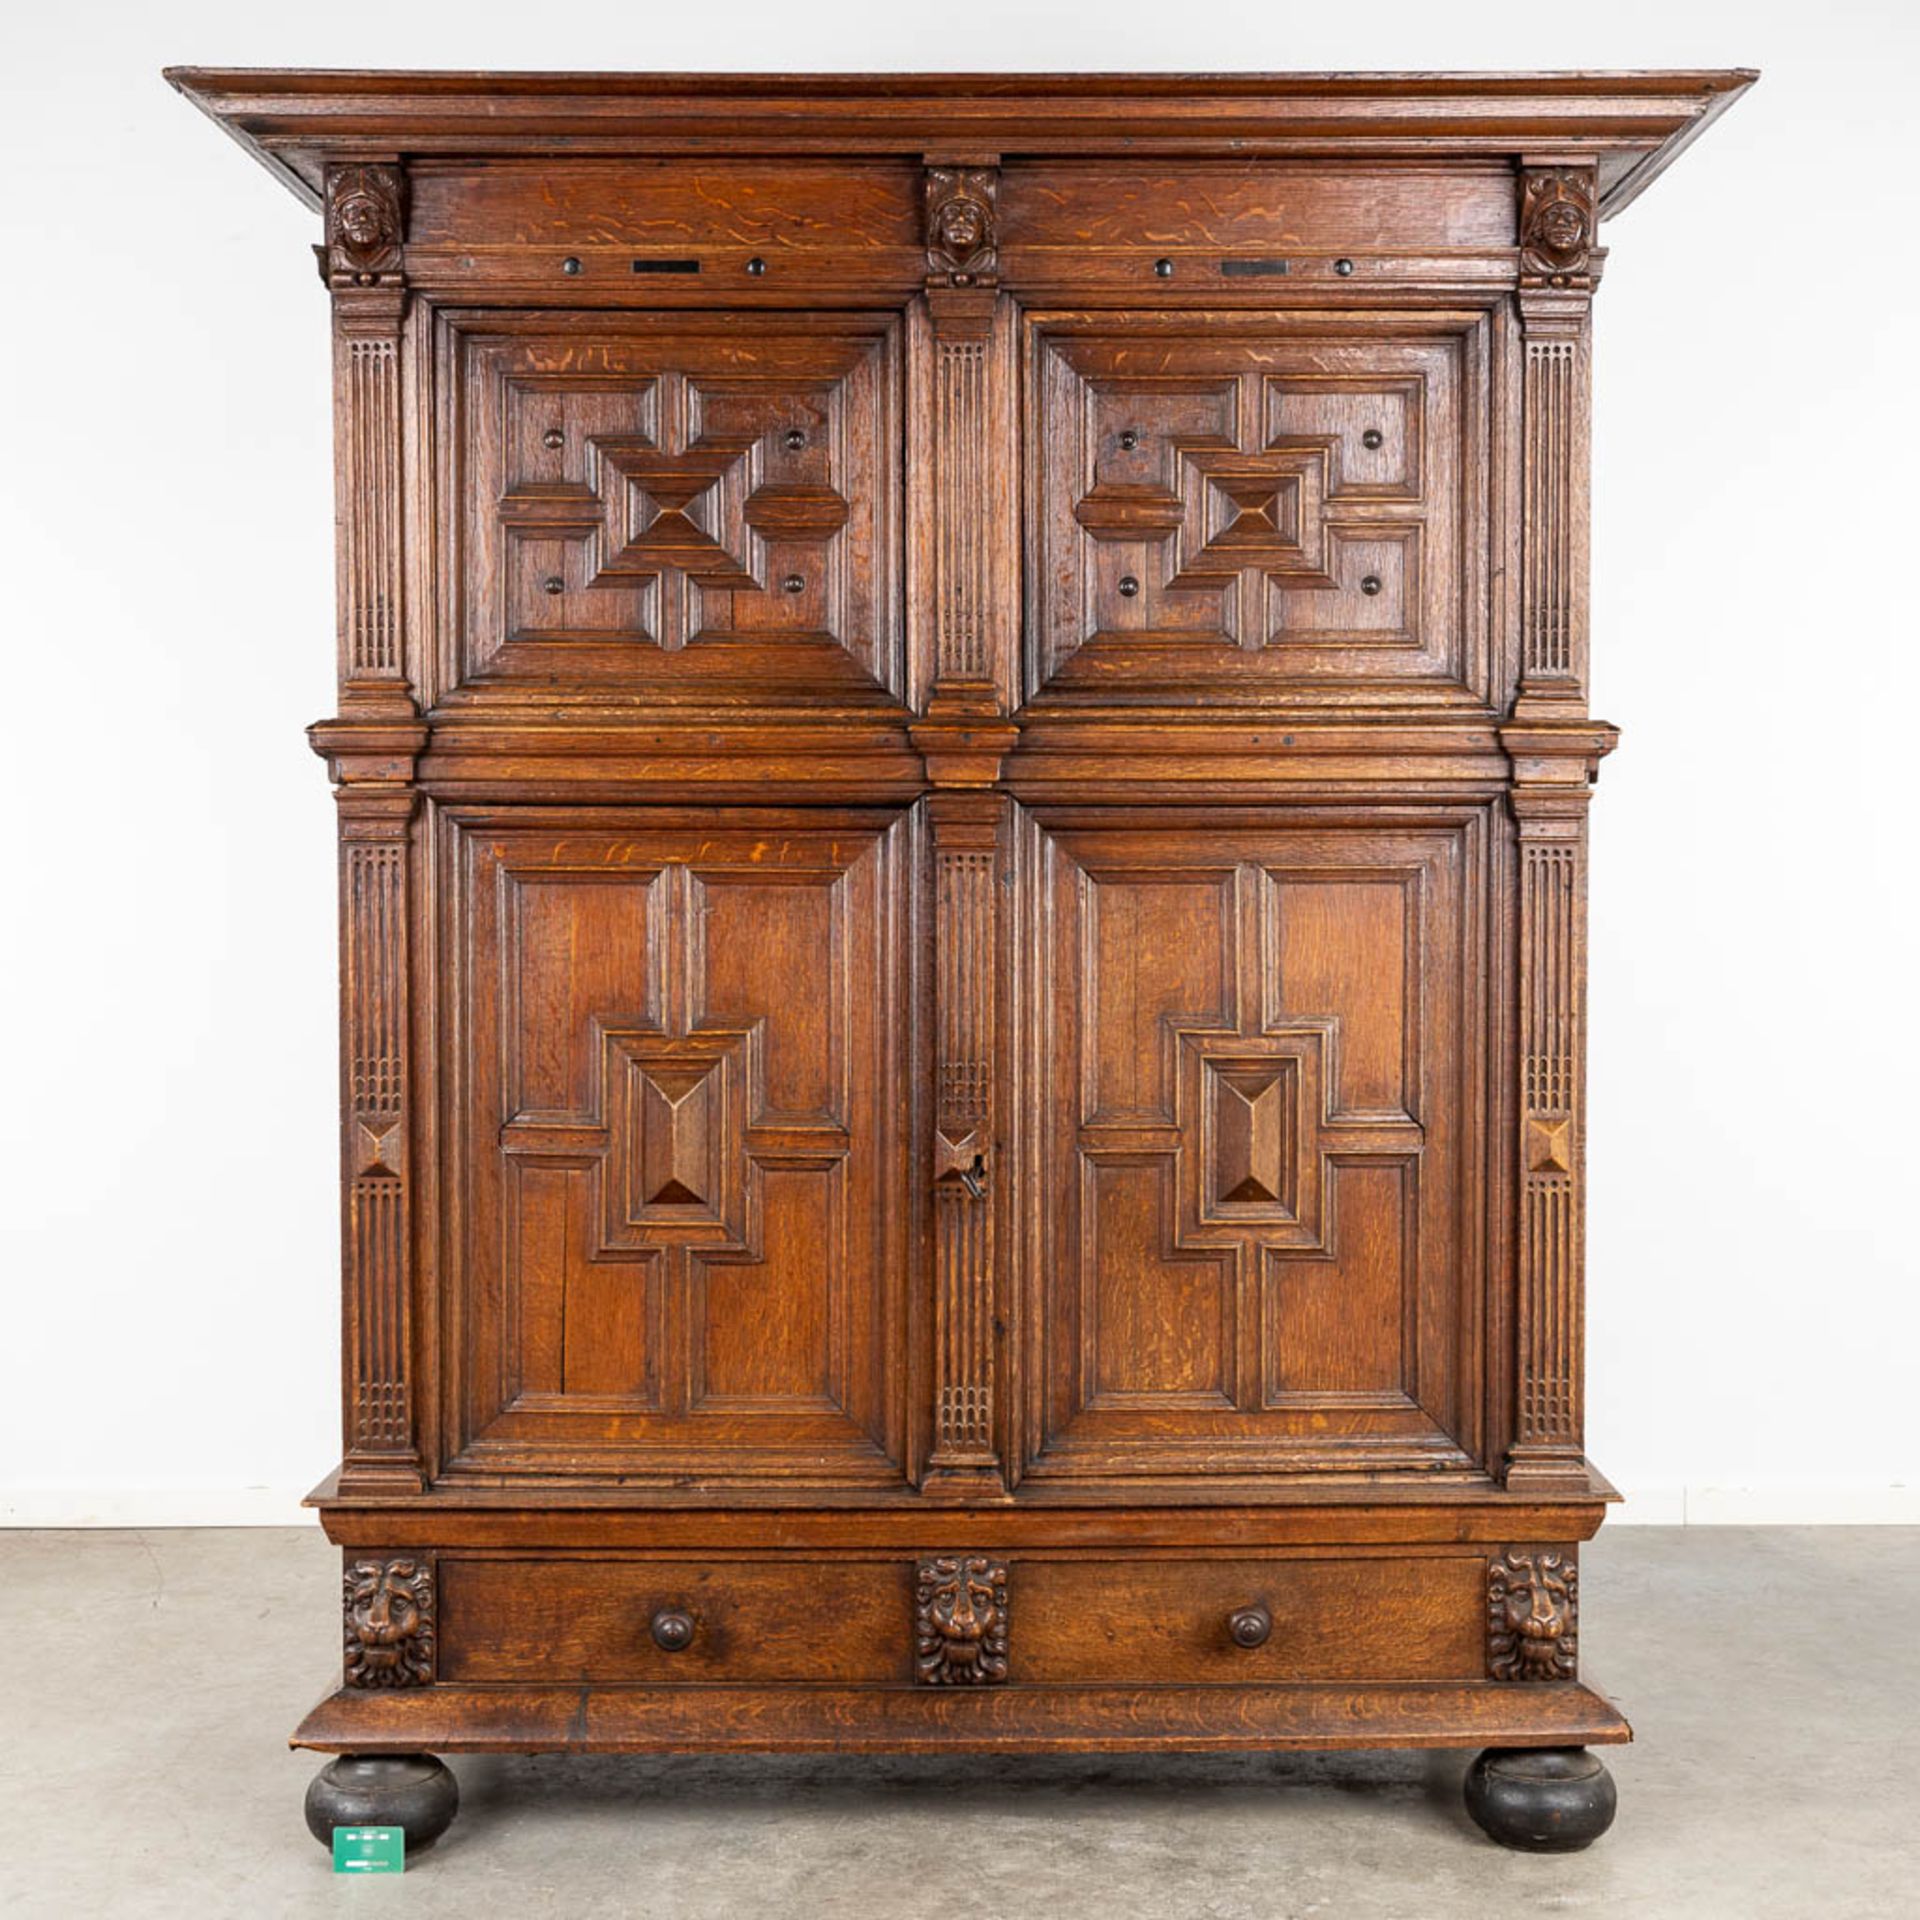 An antique four door cabinet, sculptured oak. 18th C. (D:76 x W:186 x H:216 cm) - Image 2 of 20